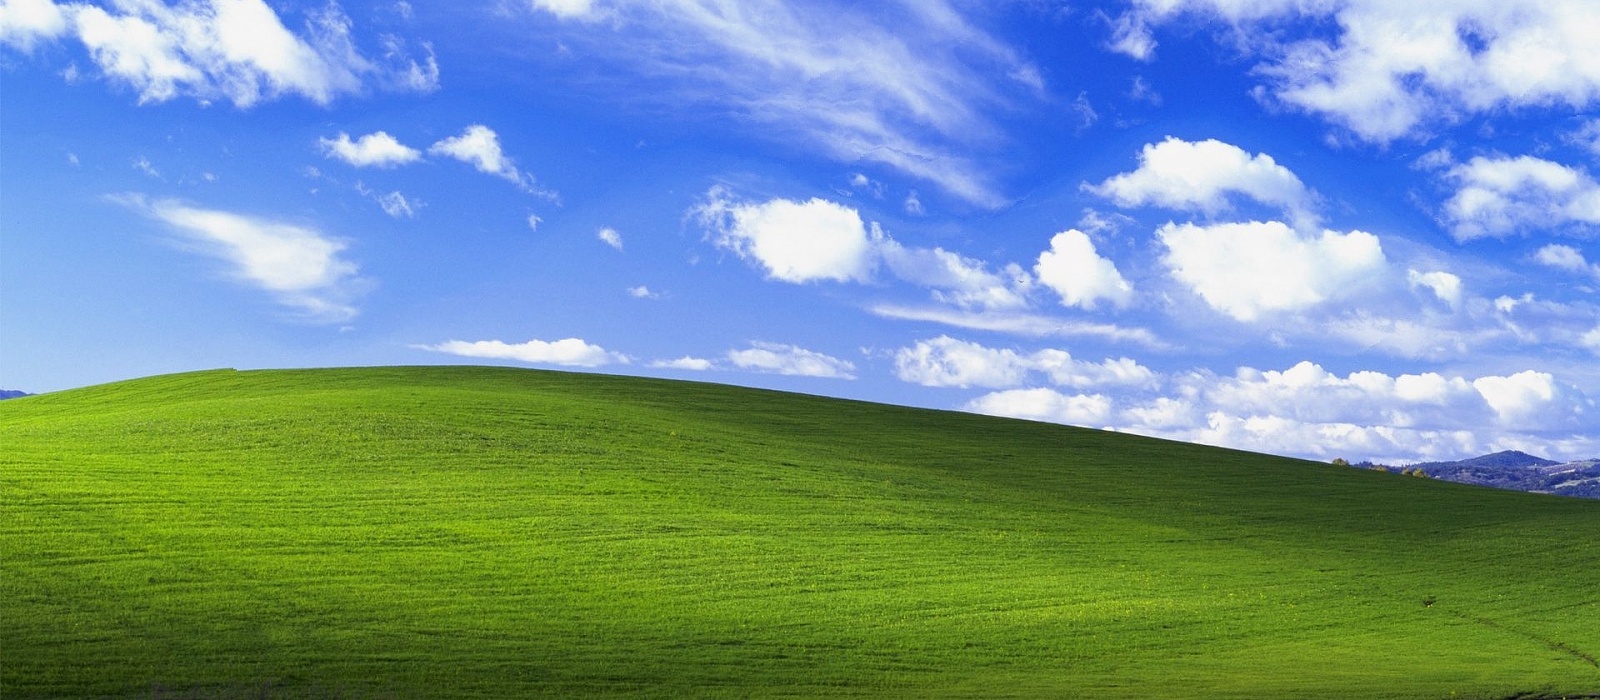 Легендарный холм из обоев для Windows XP нашли в Microsoft Flight Simulator. Сейчас он не такой зеленый